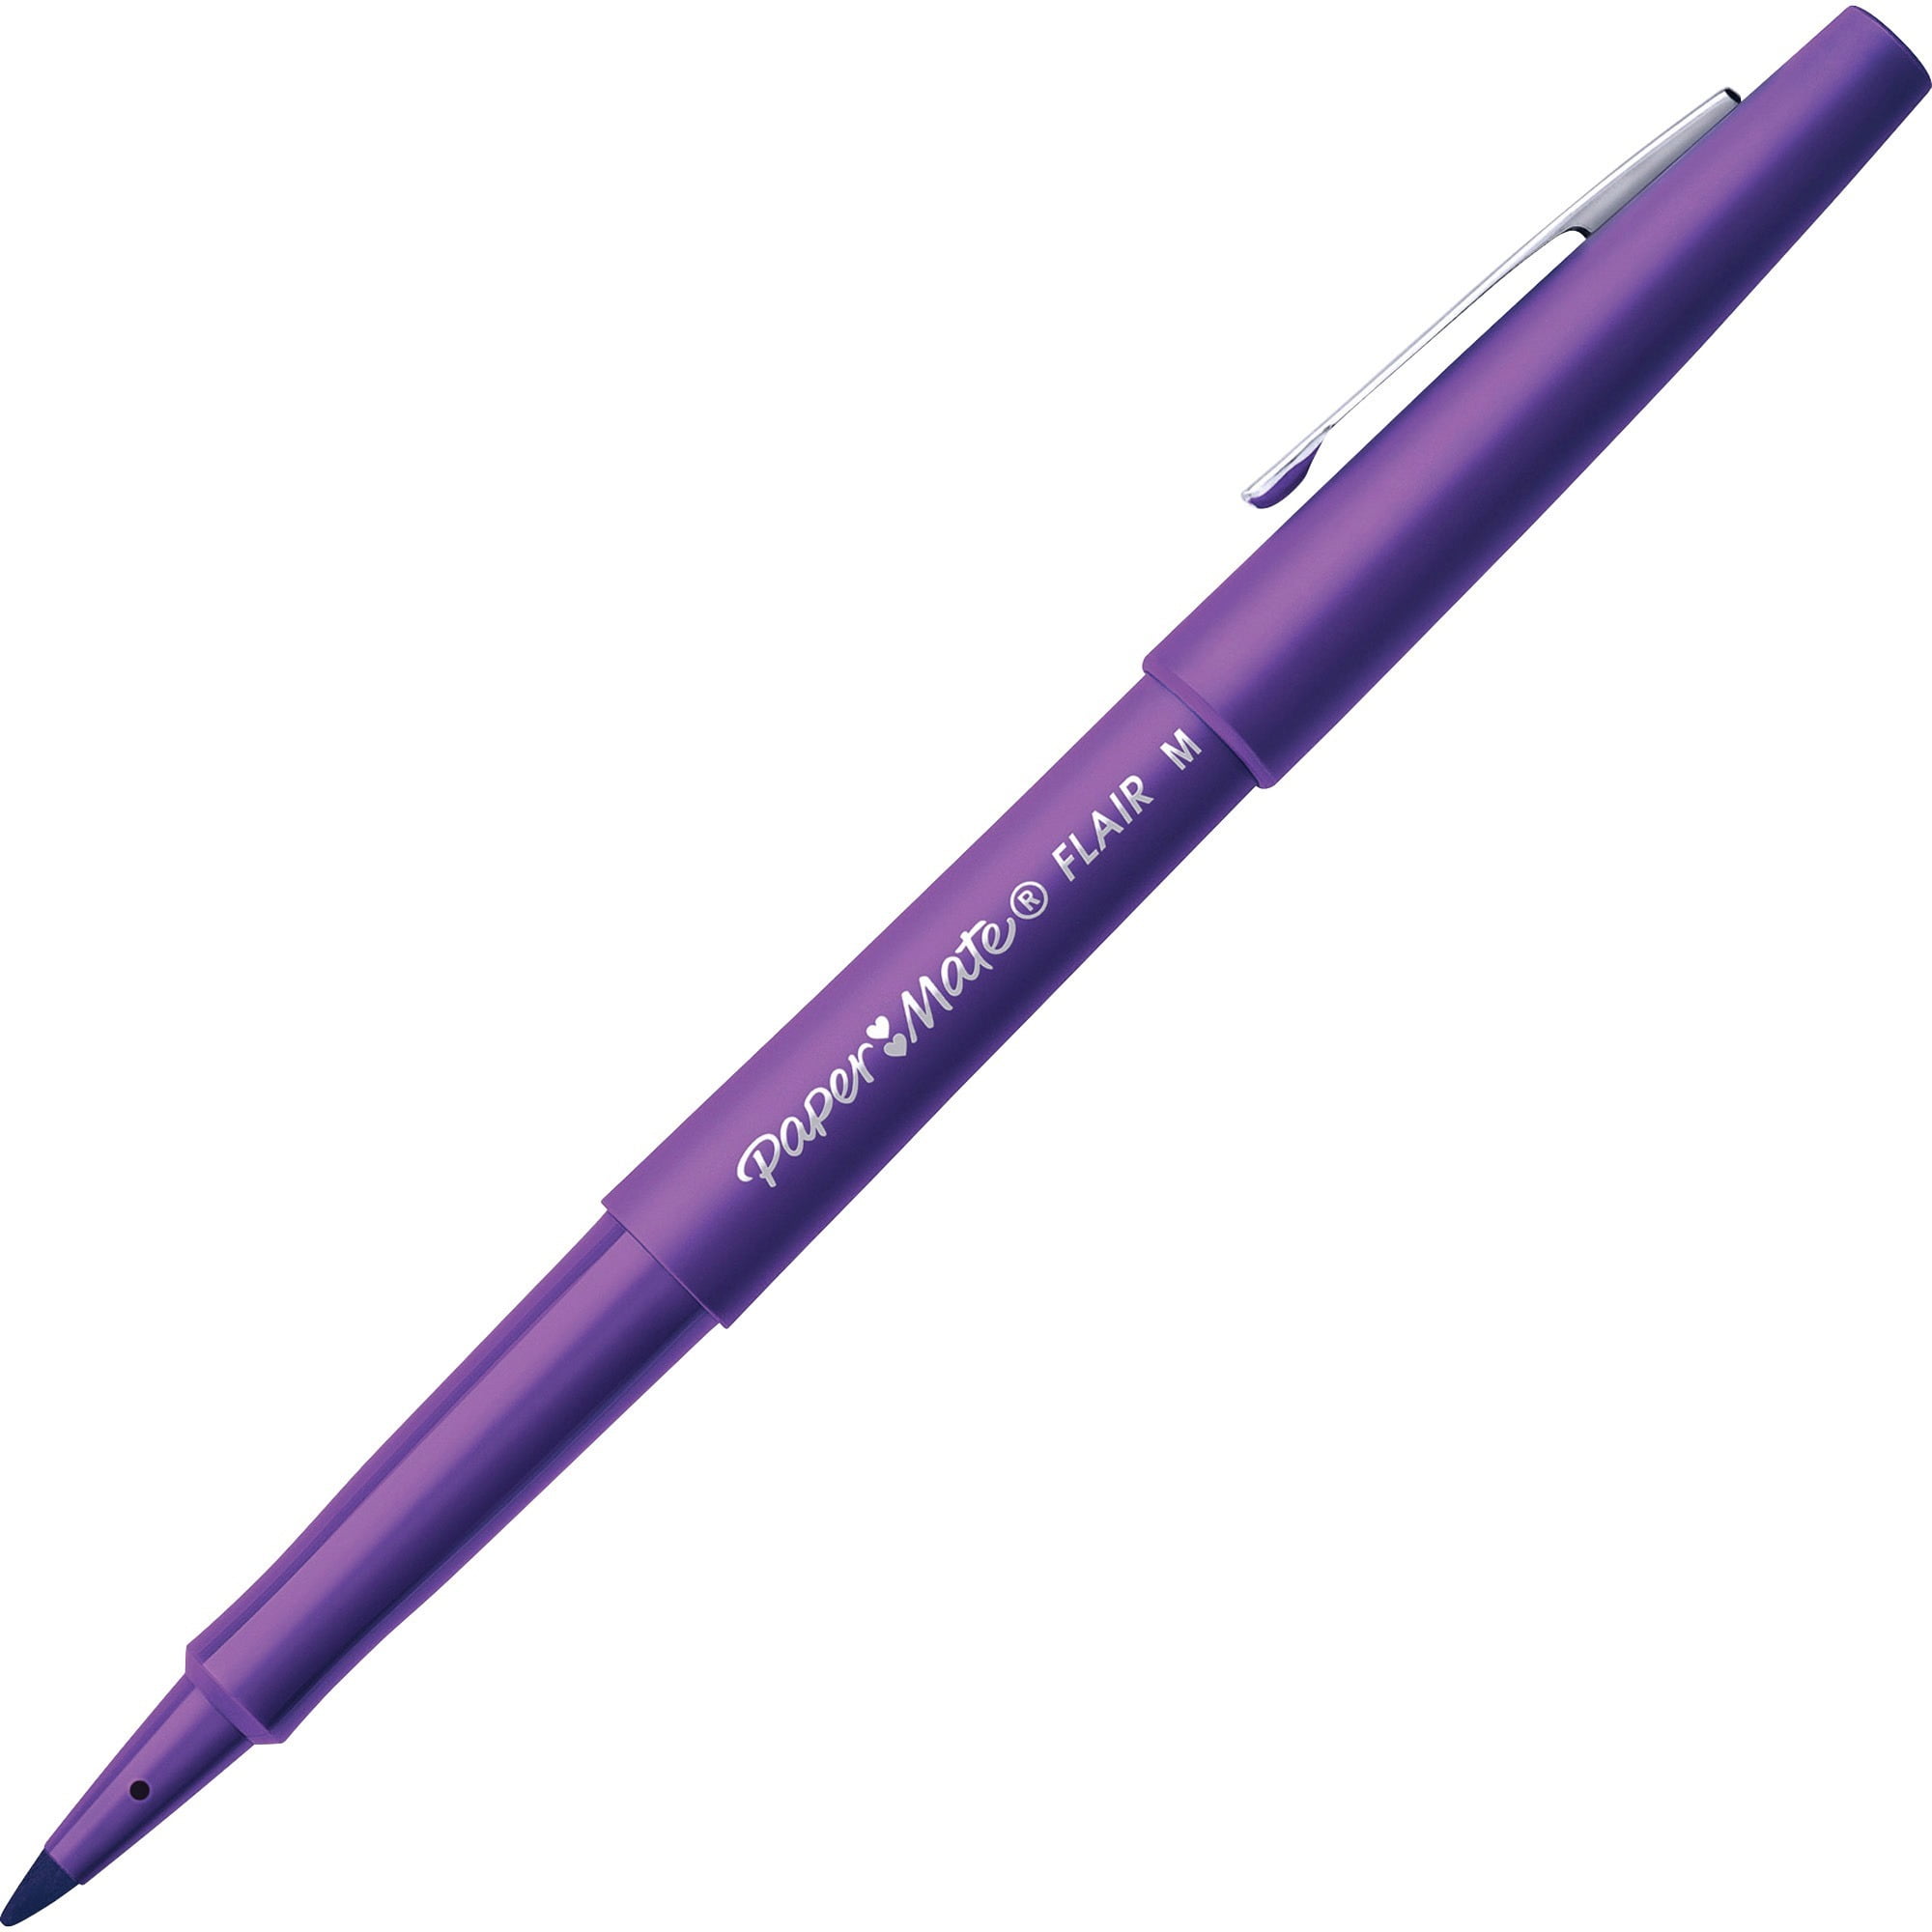 Paper Mate Flair Point Guard Felt Tip Marker Pens - PAP8450152